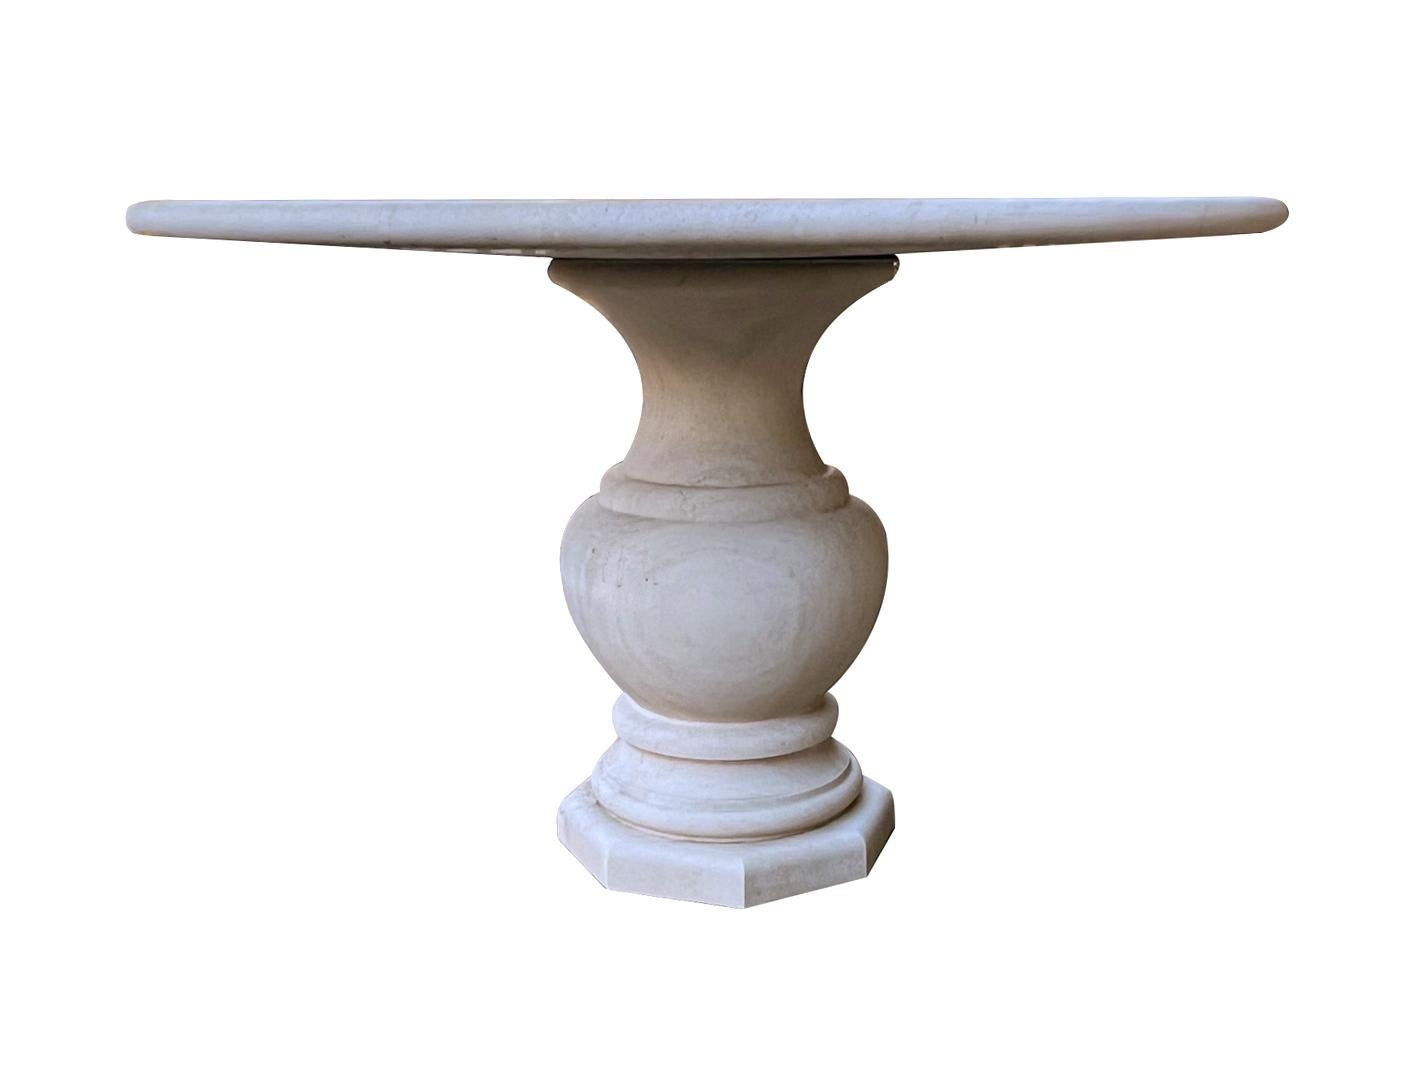 Cette table de style classique, fabriquée à la main en France, présente un épais plateau circulaire à bord arrondi ; elle repose sur une base robuste et galbée de forme balustre ; la surface présente une usure et une patine uniformes dans l'ensemble.